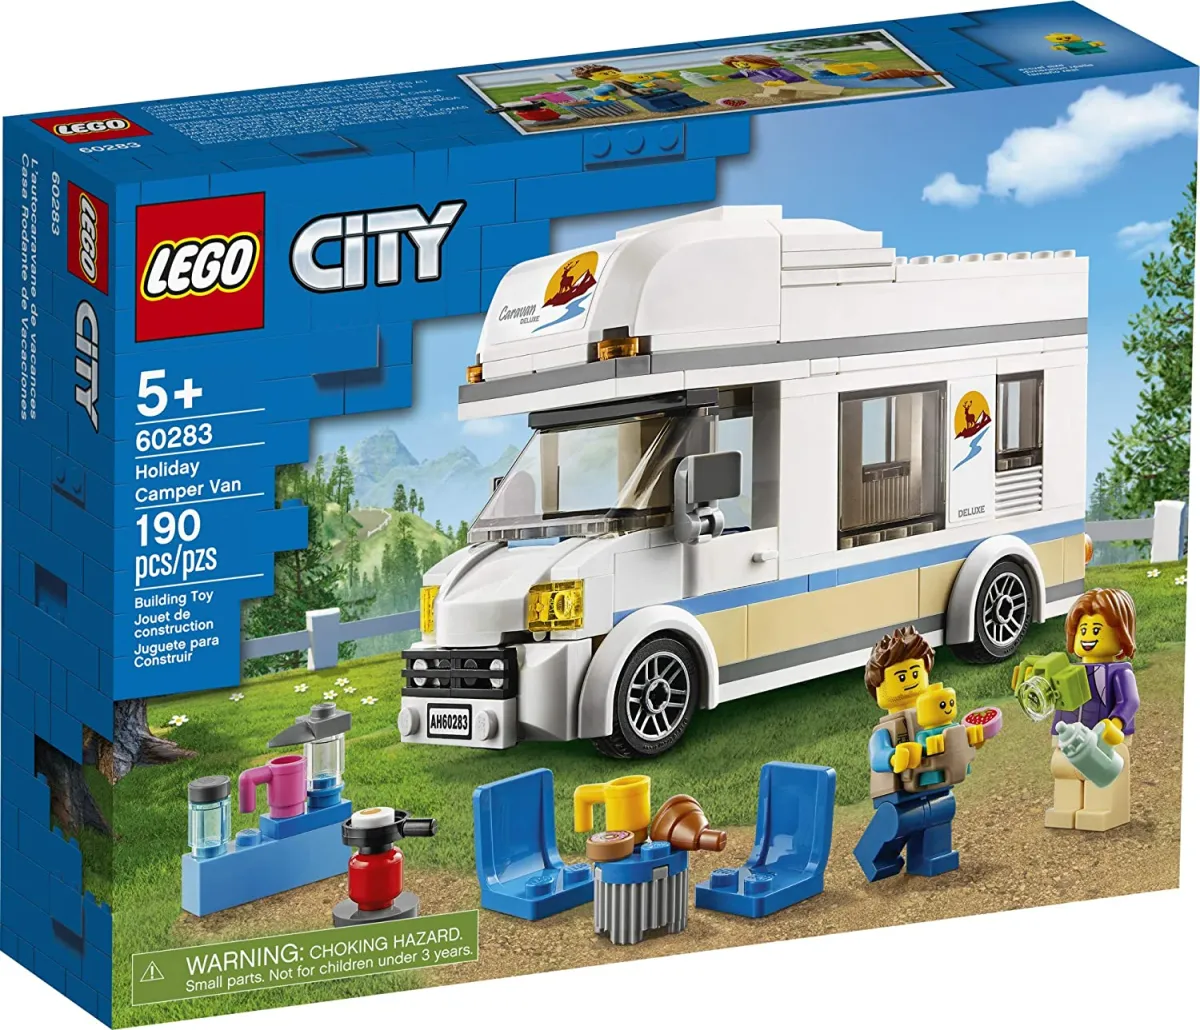 The New Bộ xếp hình LEGO City Holiday Camper Van 60283; đồ chơi kỳ ...